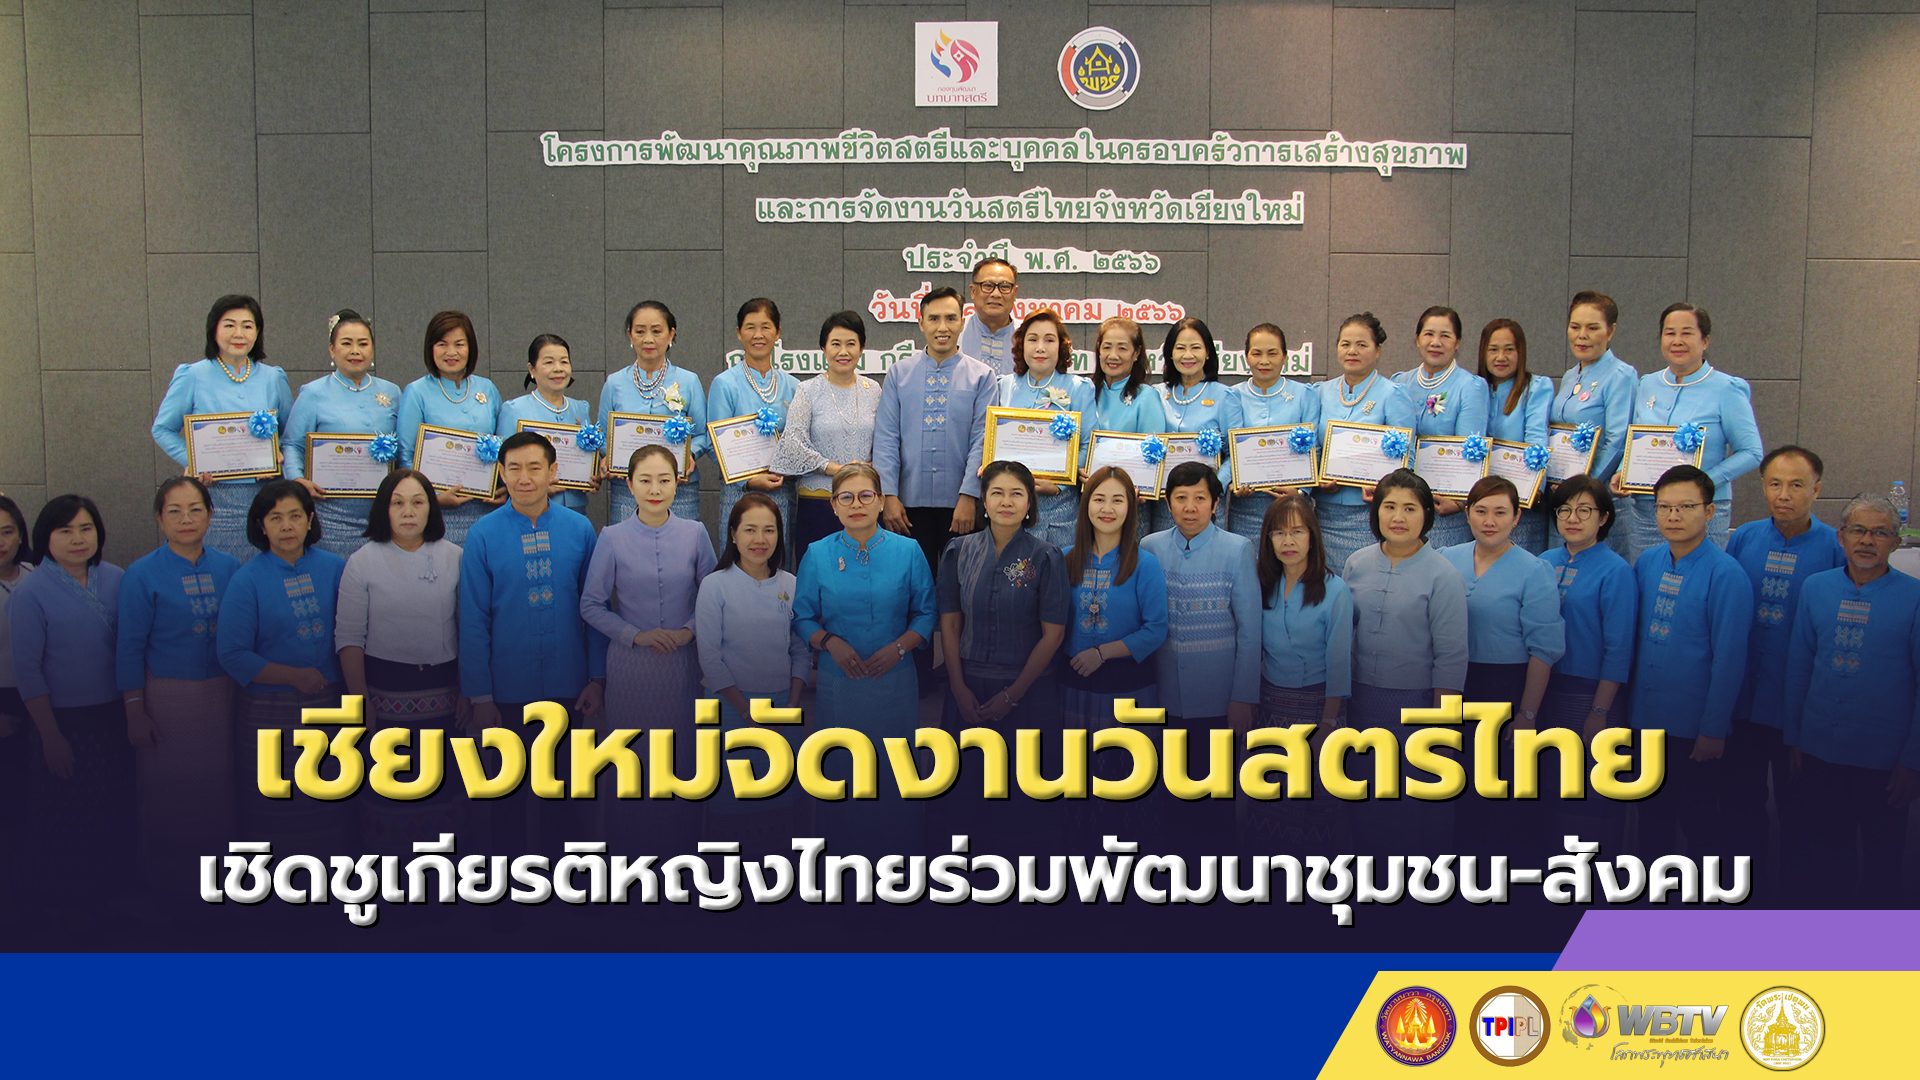 เชียงใหม่จัดงานวันสตรีไทย เชิดชูเกียรติหญิงไทยร่วมพัฒนาชุมชน-สังคม